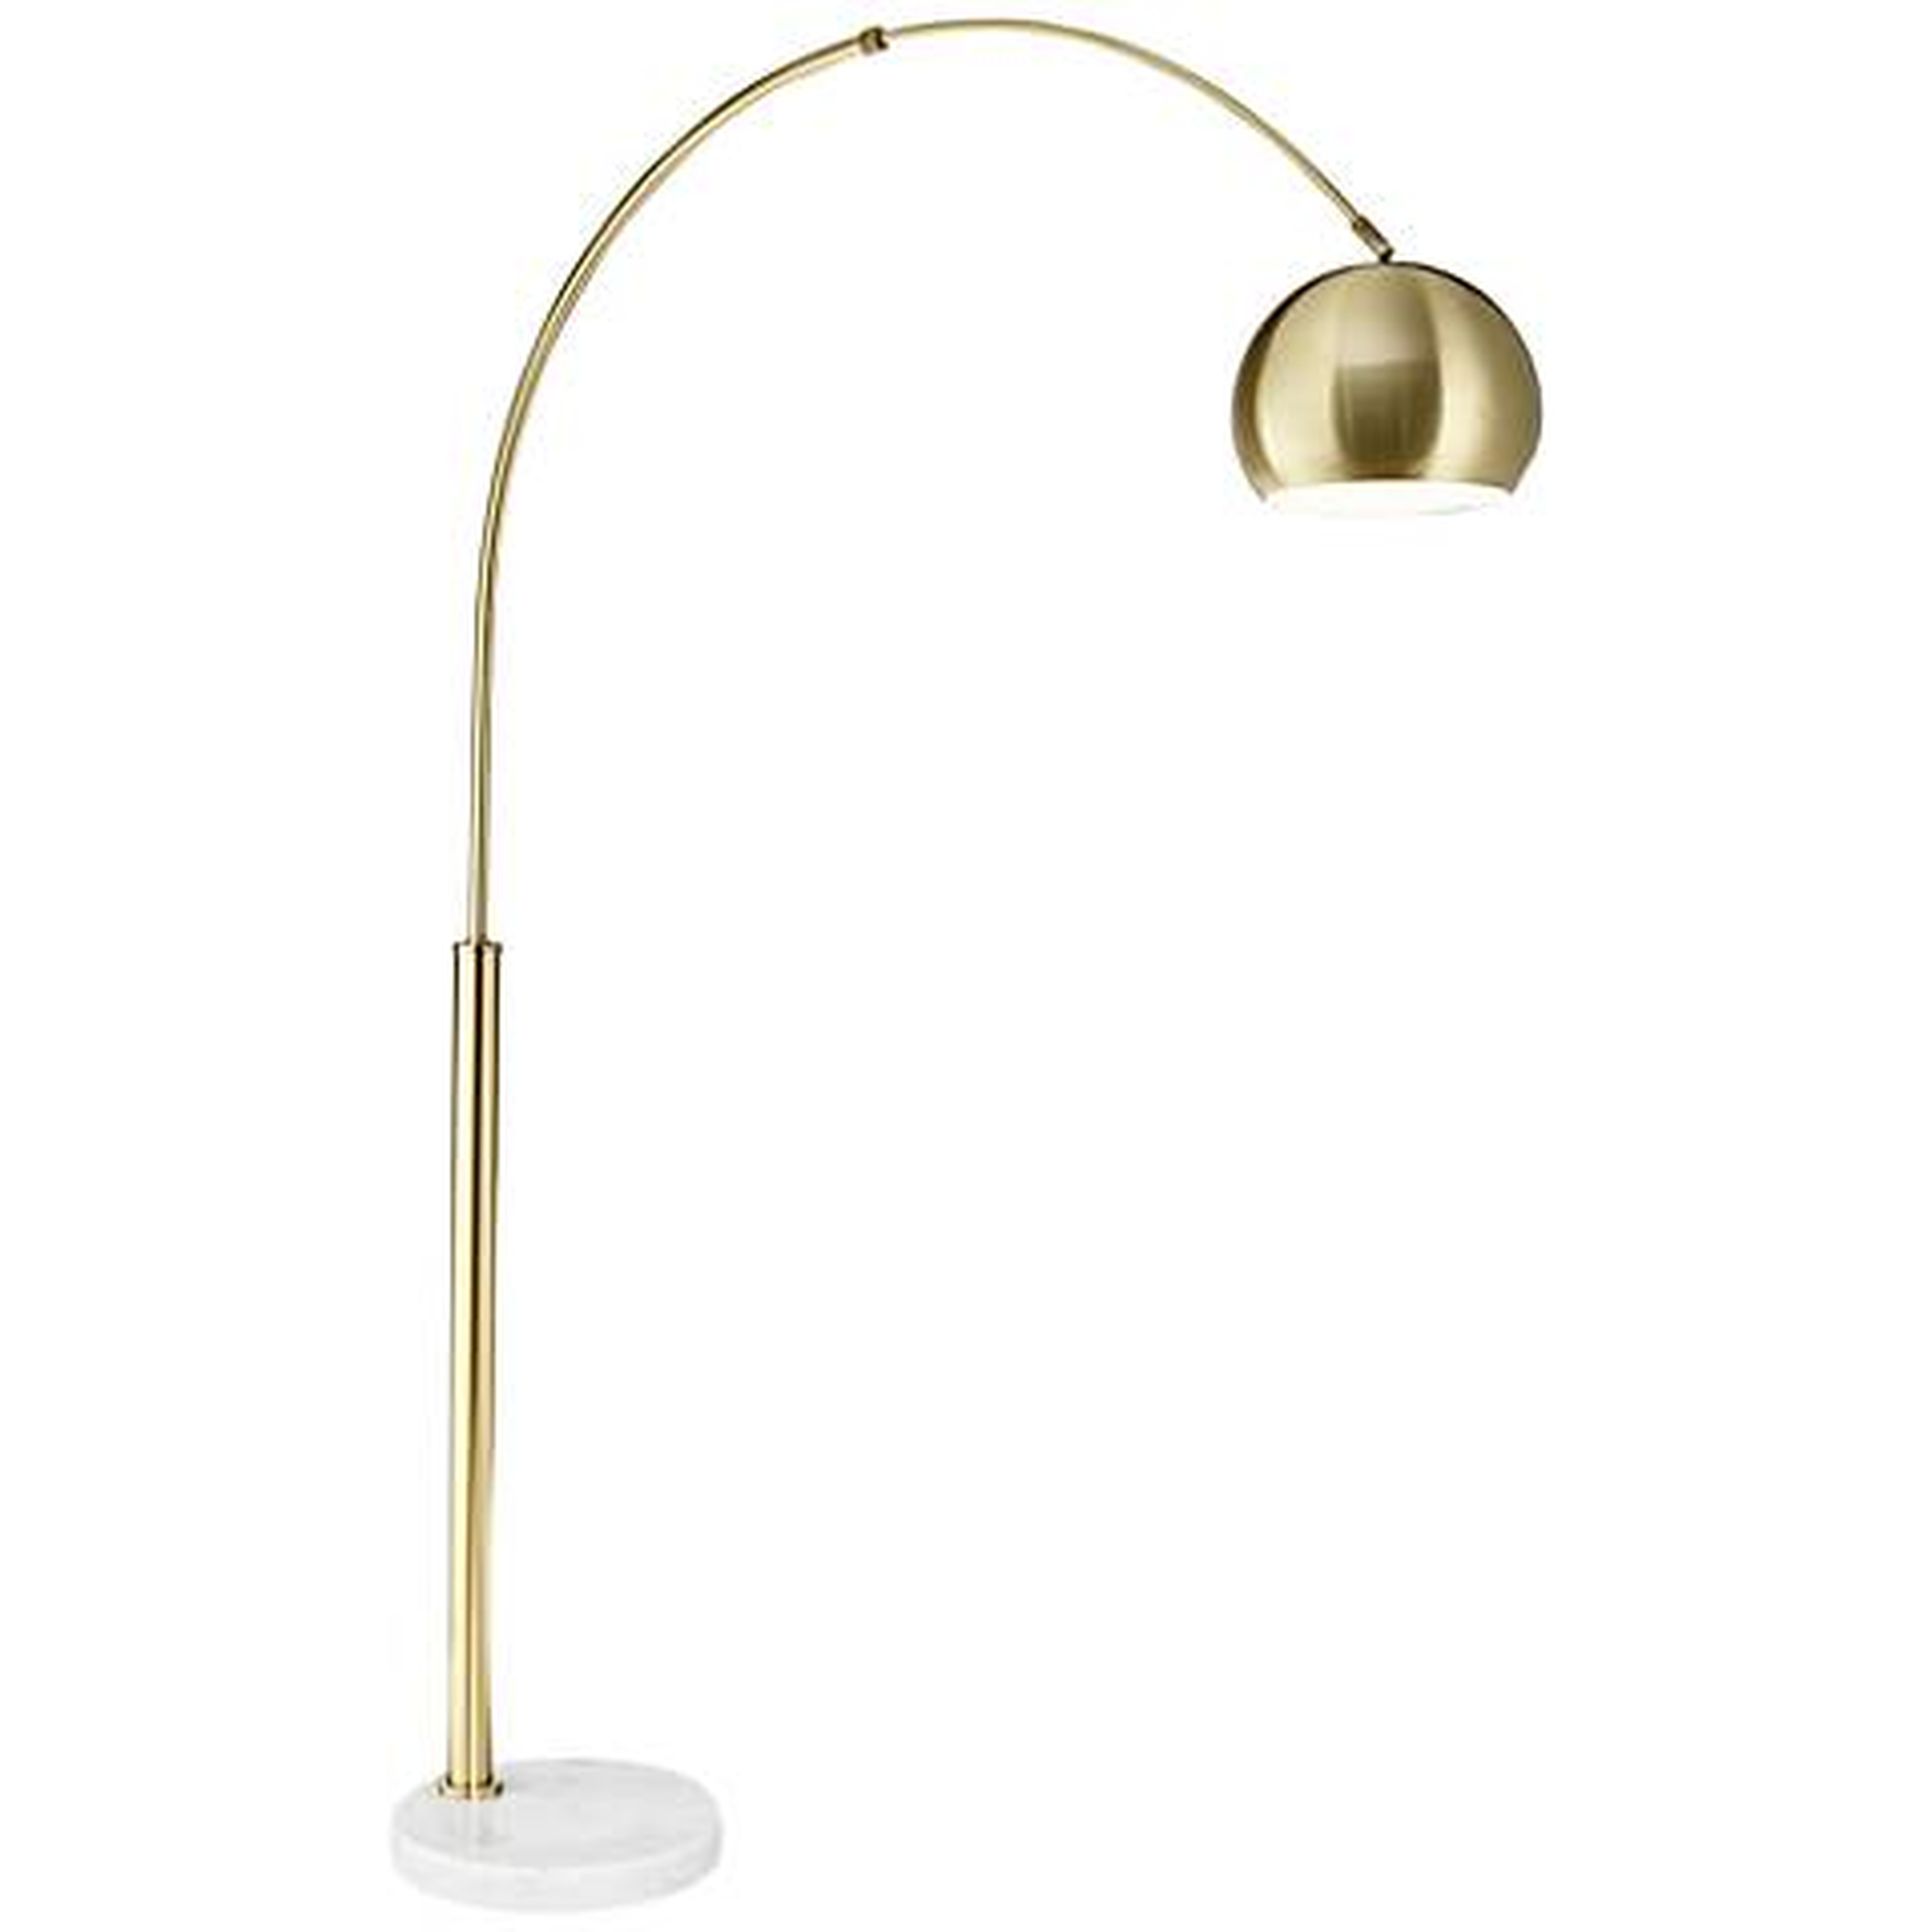 Basque Arc Floor Lamp, Gold - Lamps Plus